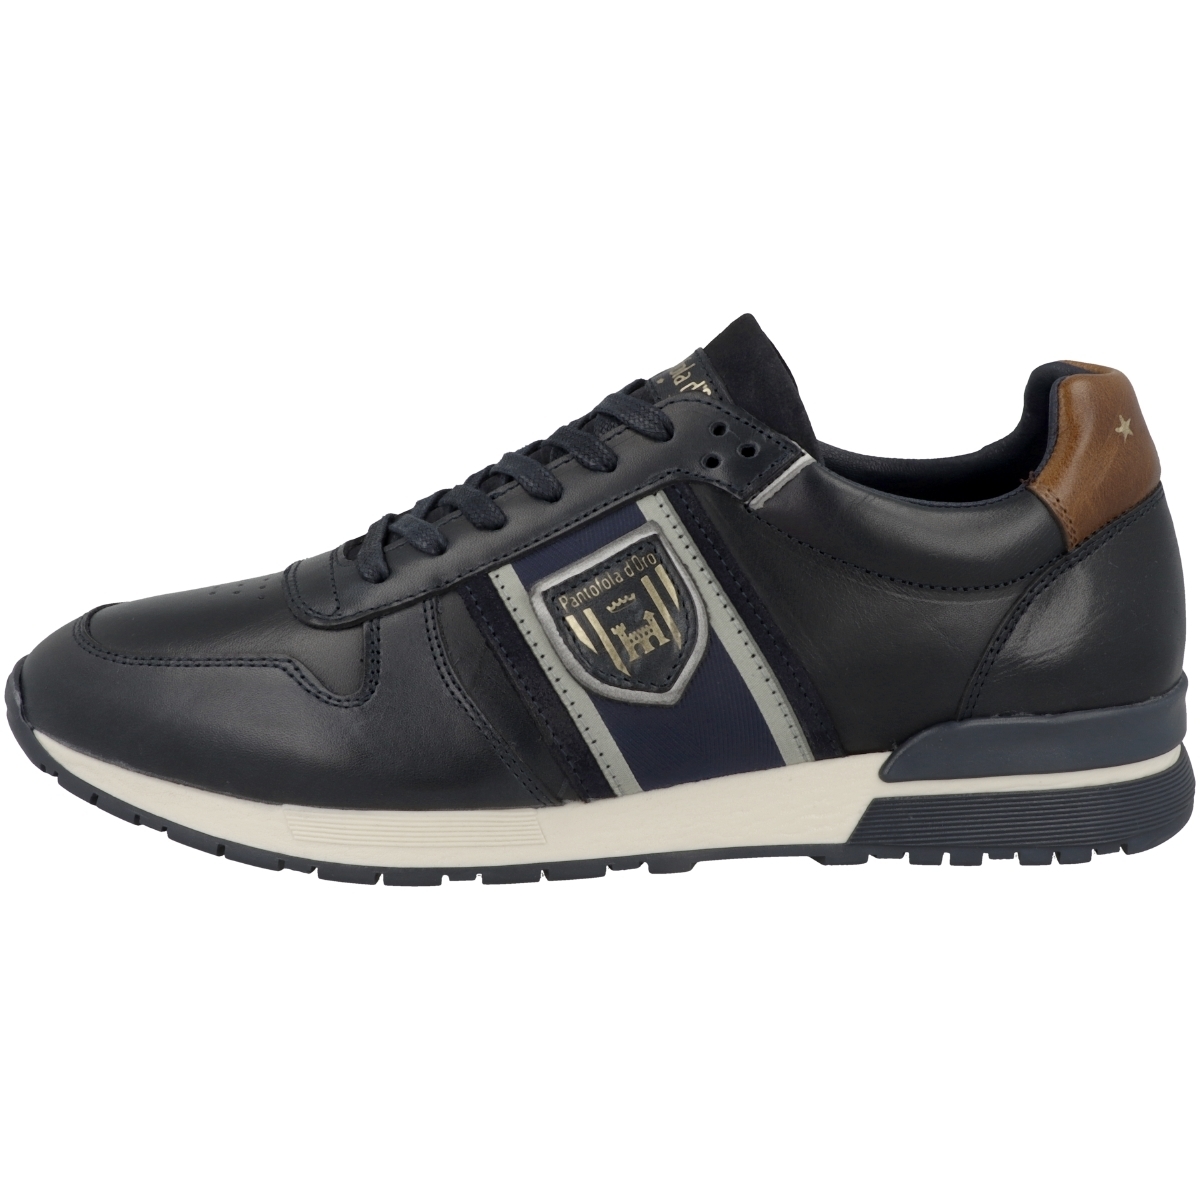 Pantofola d'Oro Sangano Uomo Low Sneaker low blau